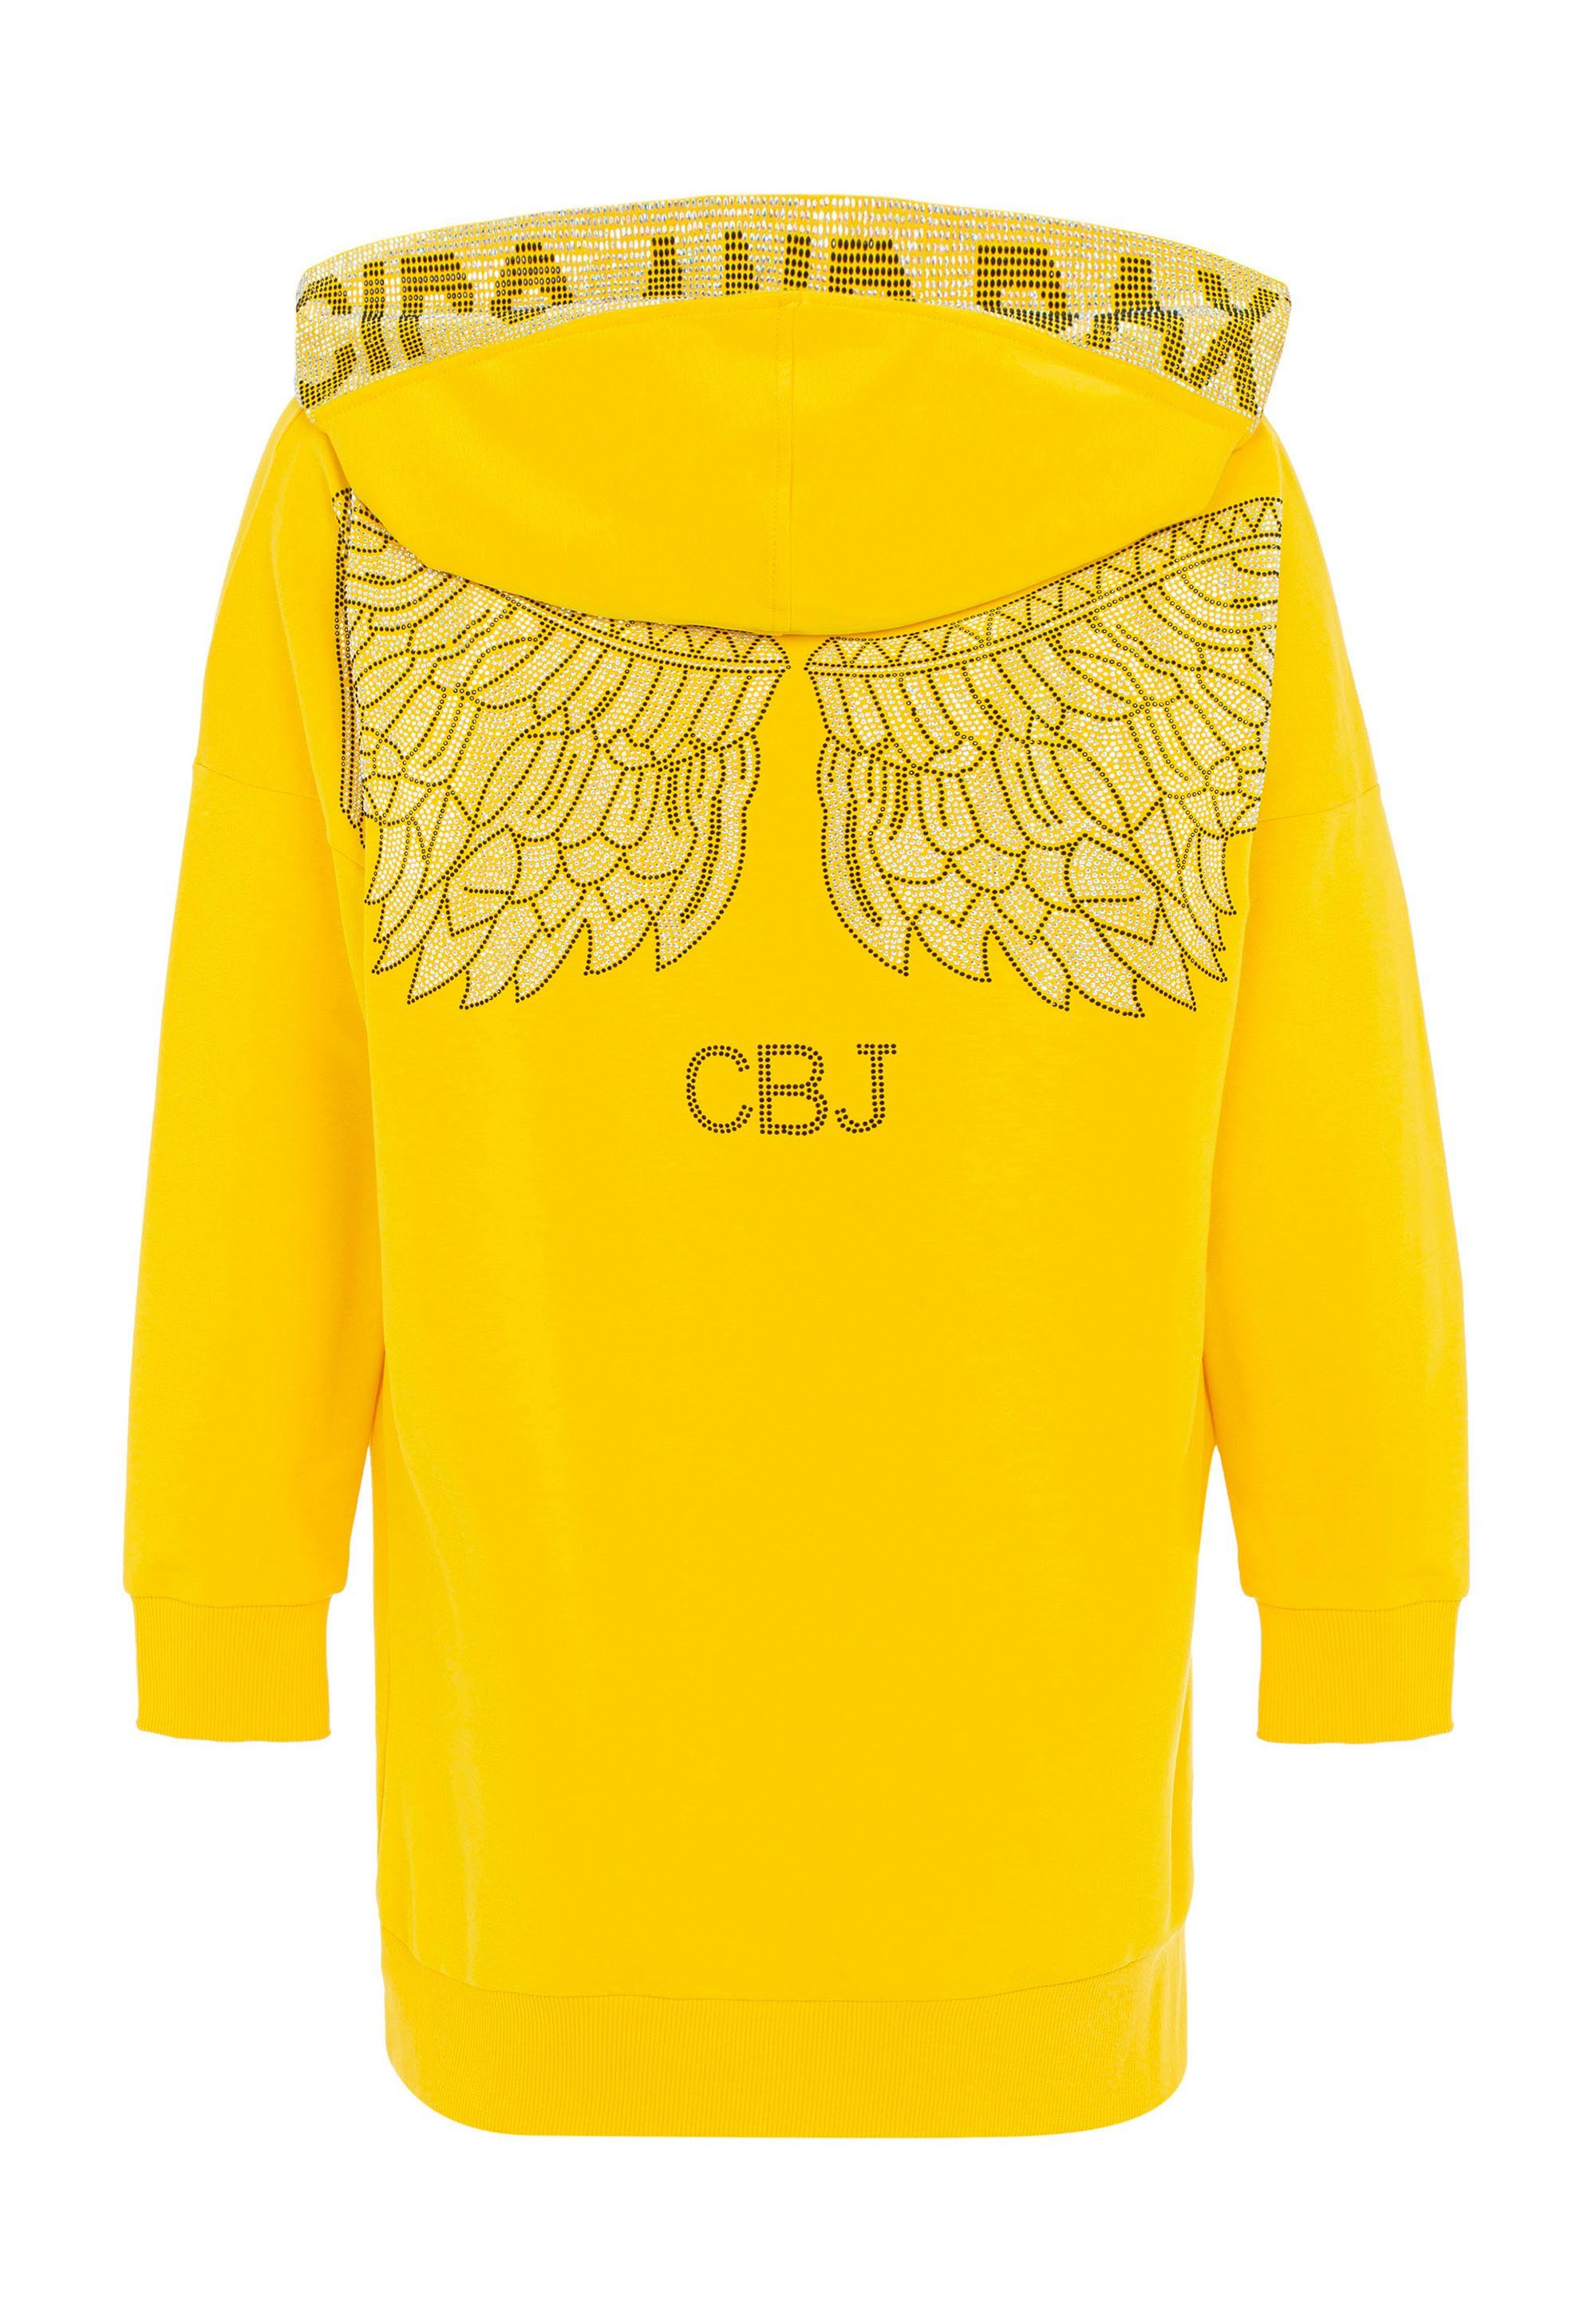 Jerseykleid Cipo mit aufwendigem Strass-Design gelb & Baxx